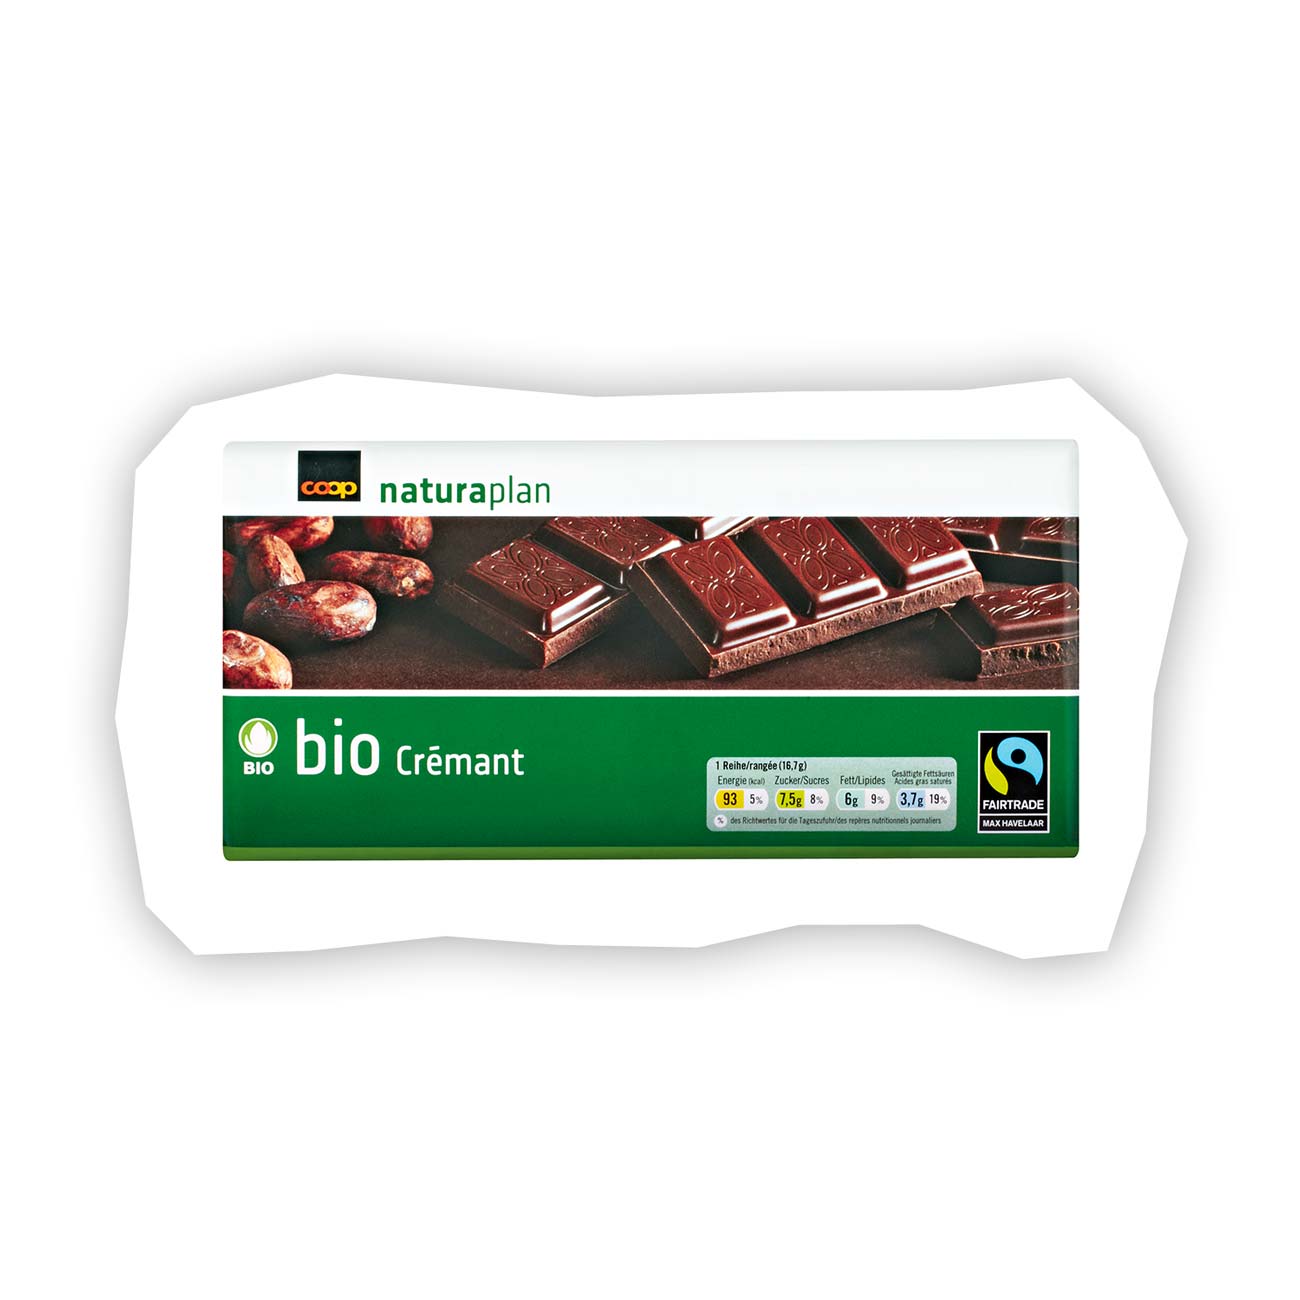 Achat Migros Bio Fairtrade · Tablette de chocolat · Noir, Crémant • Migros